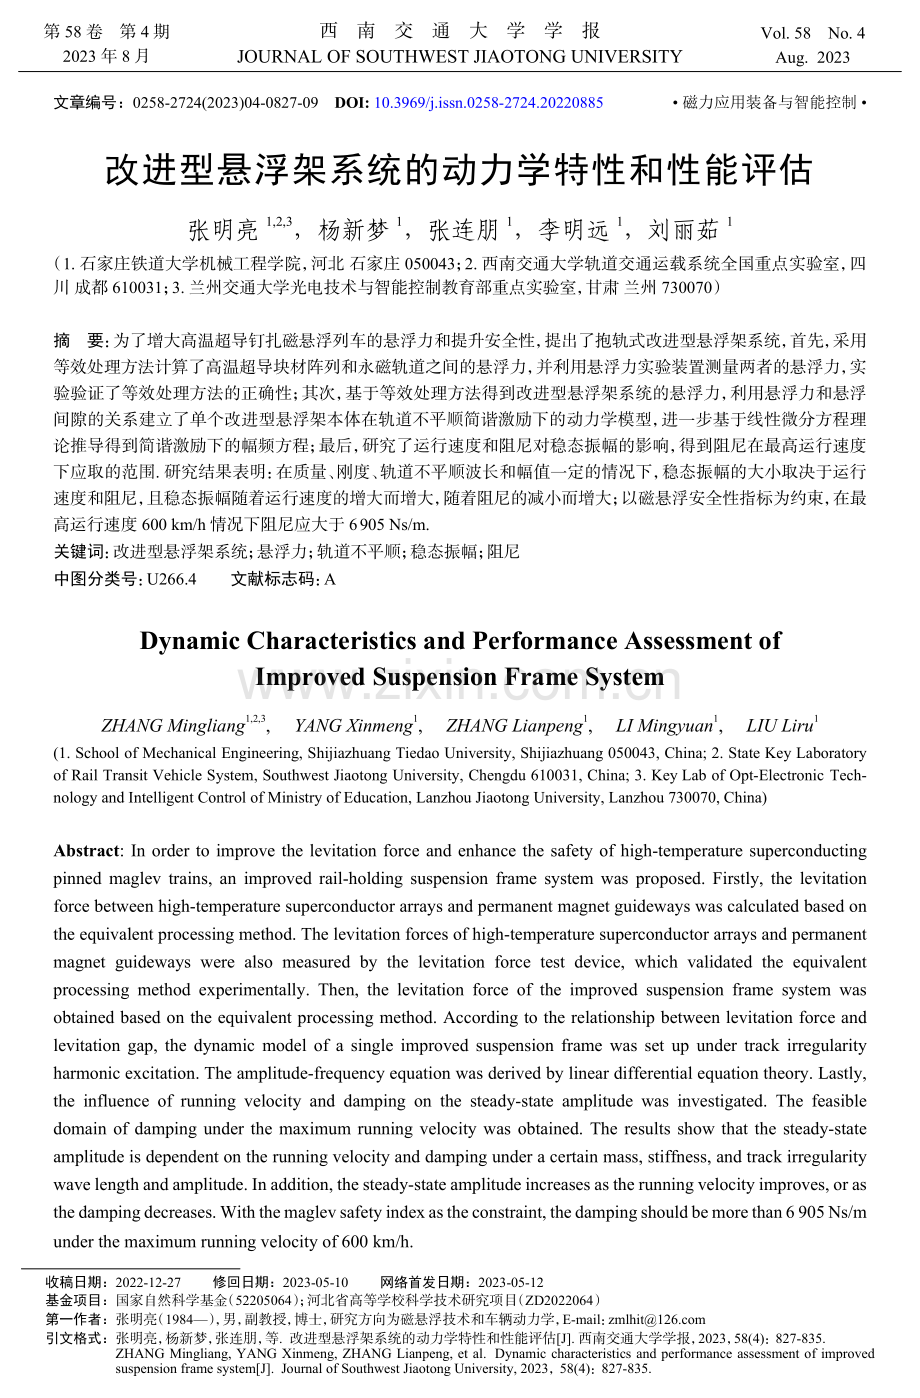 改进型悬浮架系统的动力学特性和性能评估.pdf_第1页